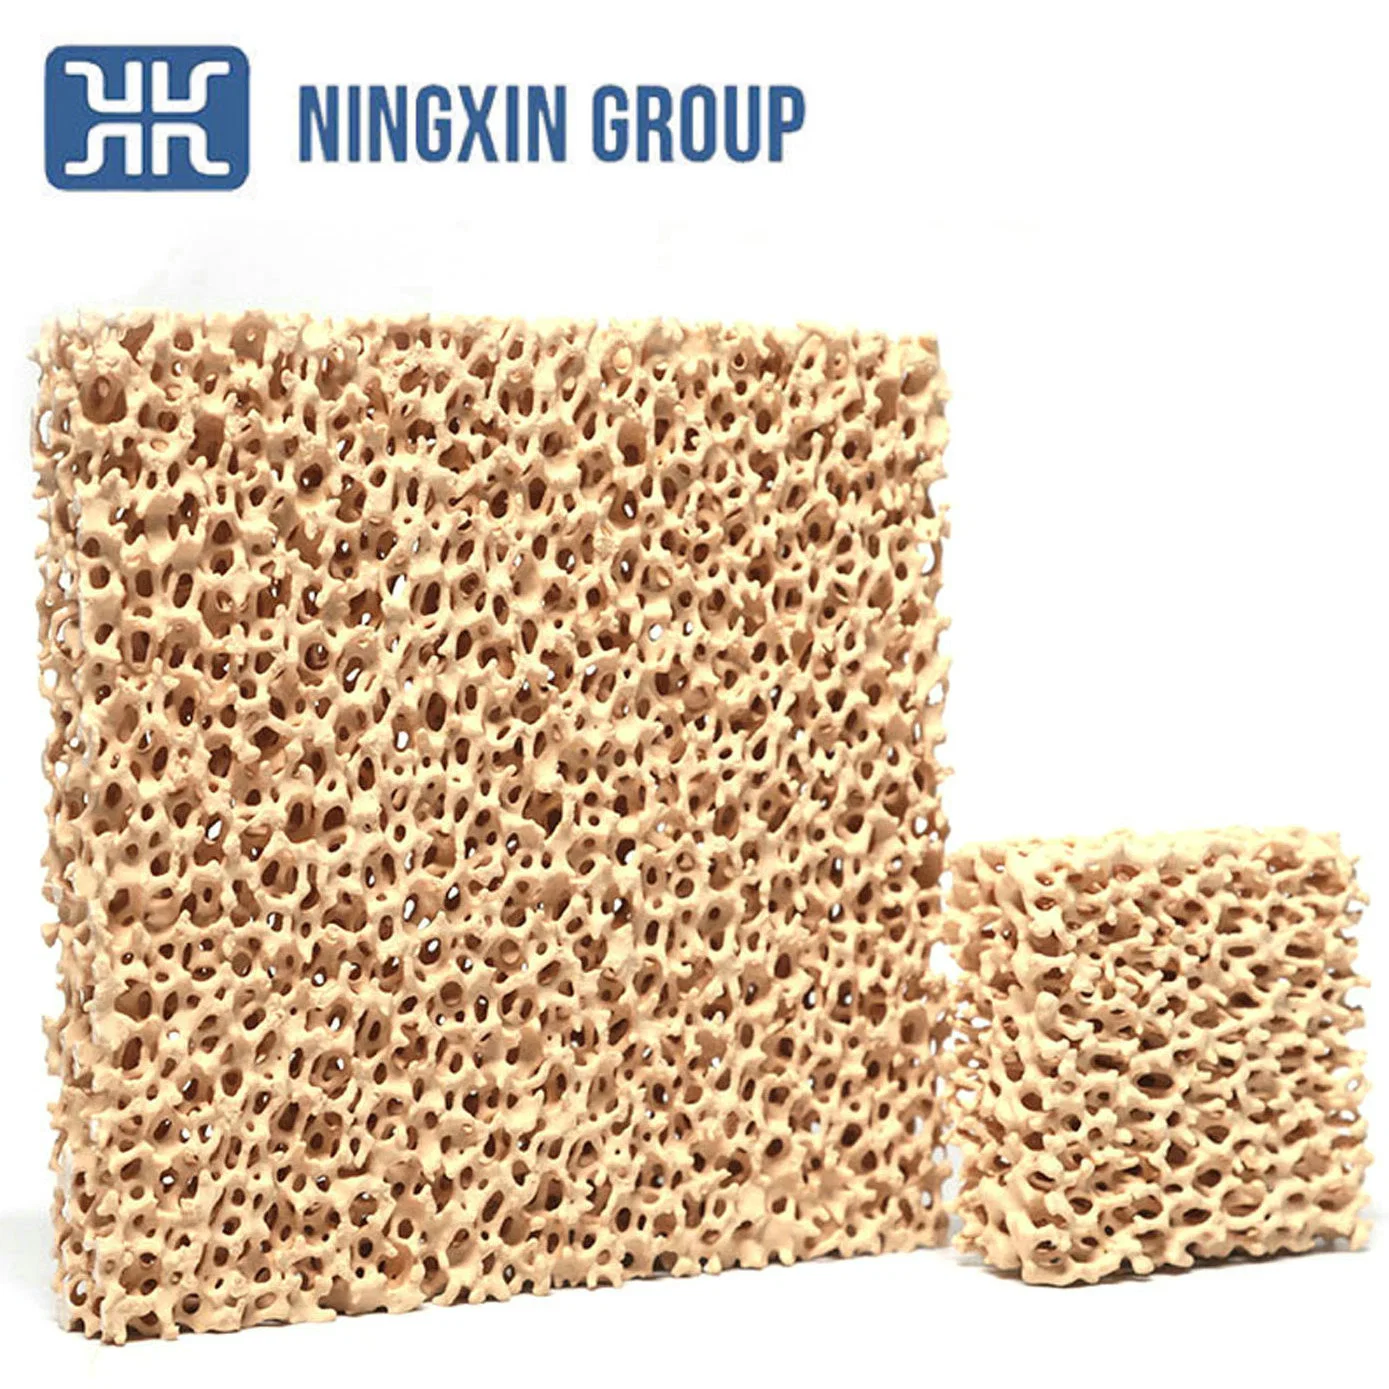 Alta porosidad de Zirconia de cerámica de magnesia filtro de espuma 1700 de la temperatura de trabajo de la marca Ningxin productos de calidad garantizada